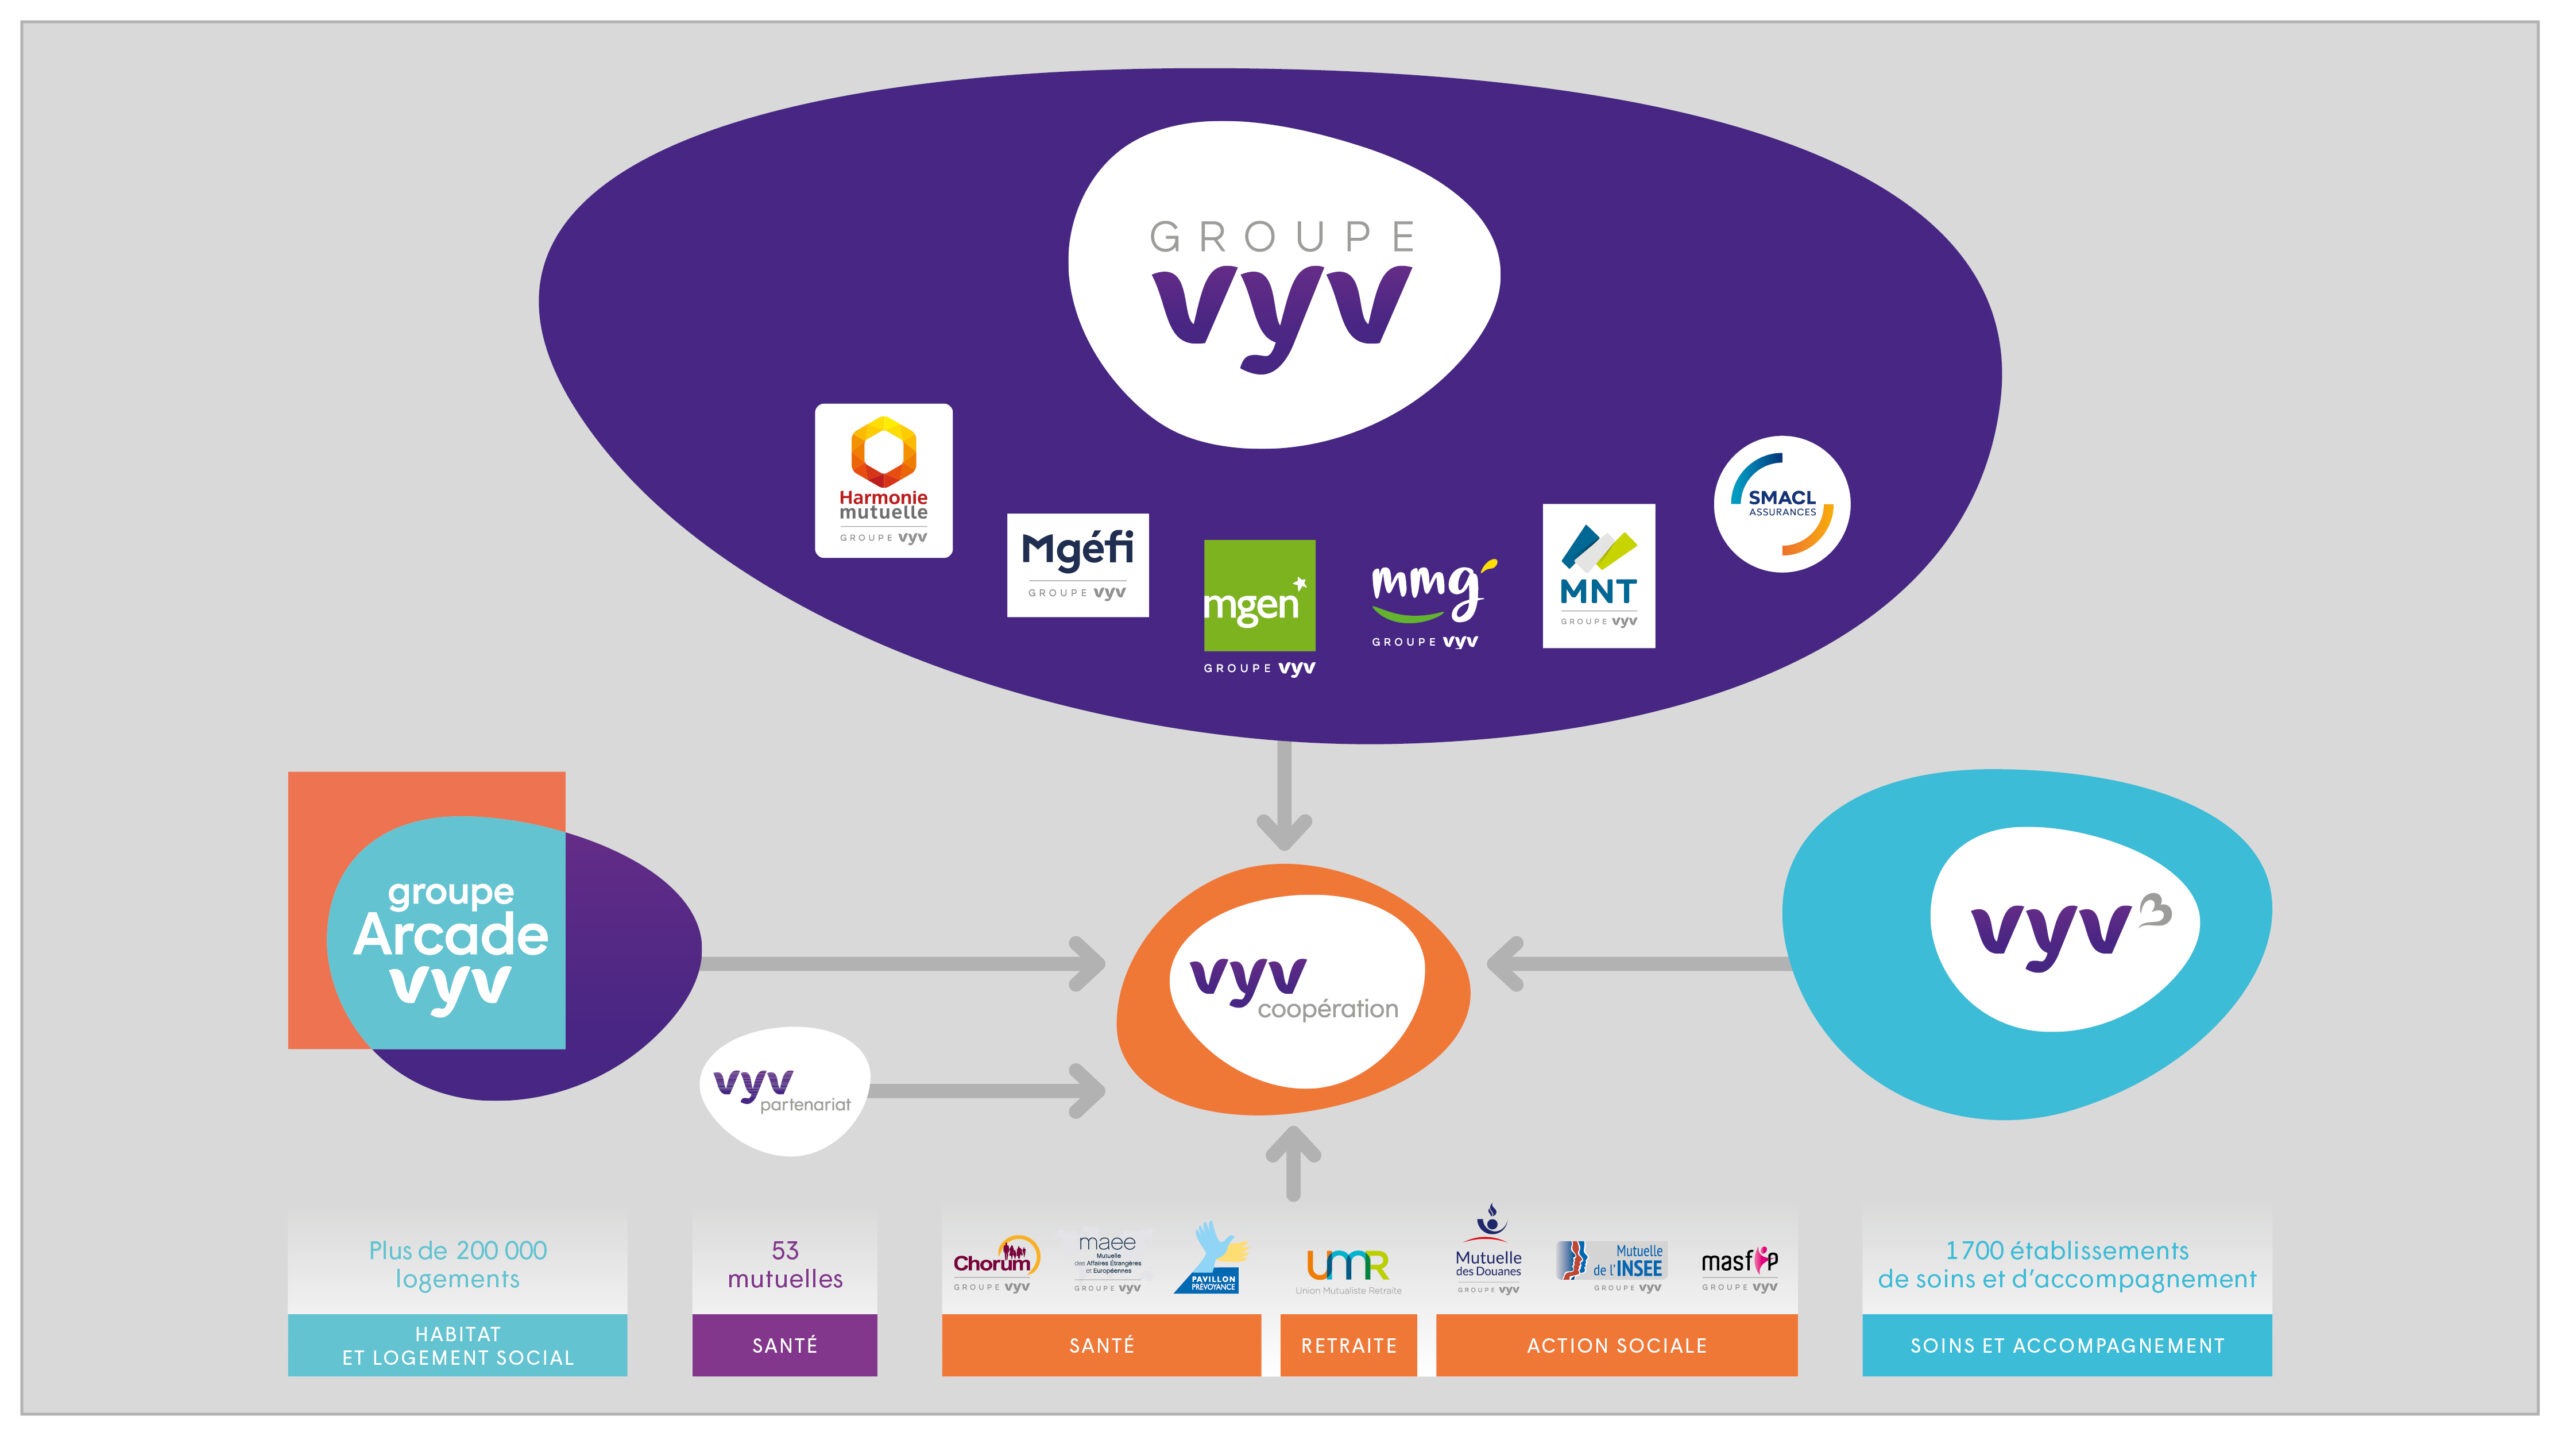 Ce schéma représente la structure du Groupe VYV. Les logos de Harmonie Mutuelle, Mgéfi, MGEN, MMG, MNT, Smacl Assurances et du Groupe sont représentés dans une première bulle réunissant les structures de l'U.M.G Groupe VYV. Au centre du schéma, on trouve une bulle représentant VYV Coopération. En plus de la bulle réunissant les structures de l'UMG Groupe VYV, toutes les structures suivantes sont reliées à VYV Coopération grâce à des flèches : Groupe Arcade VYV, VYV 3, VYV Partenariat,